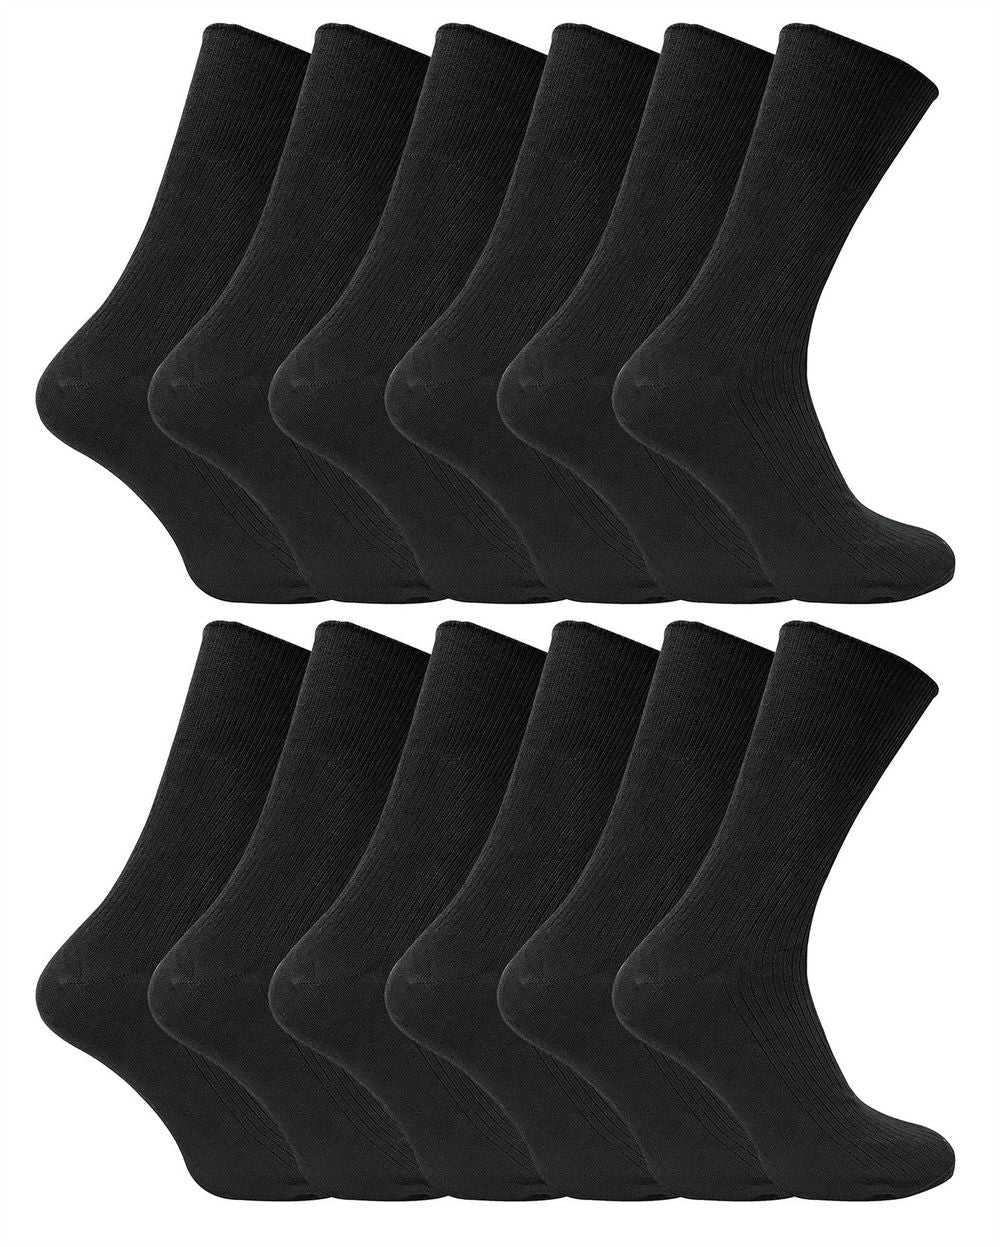 12 Pairs Non Elastic 100% Cotton Socks